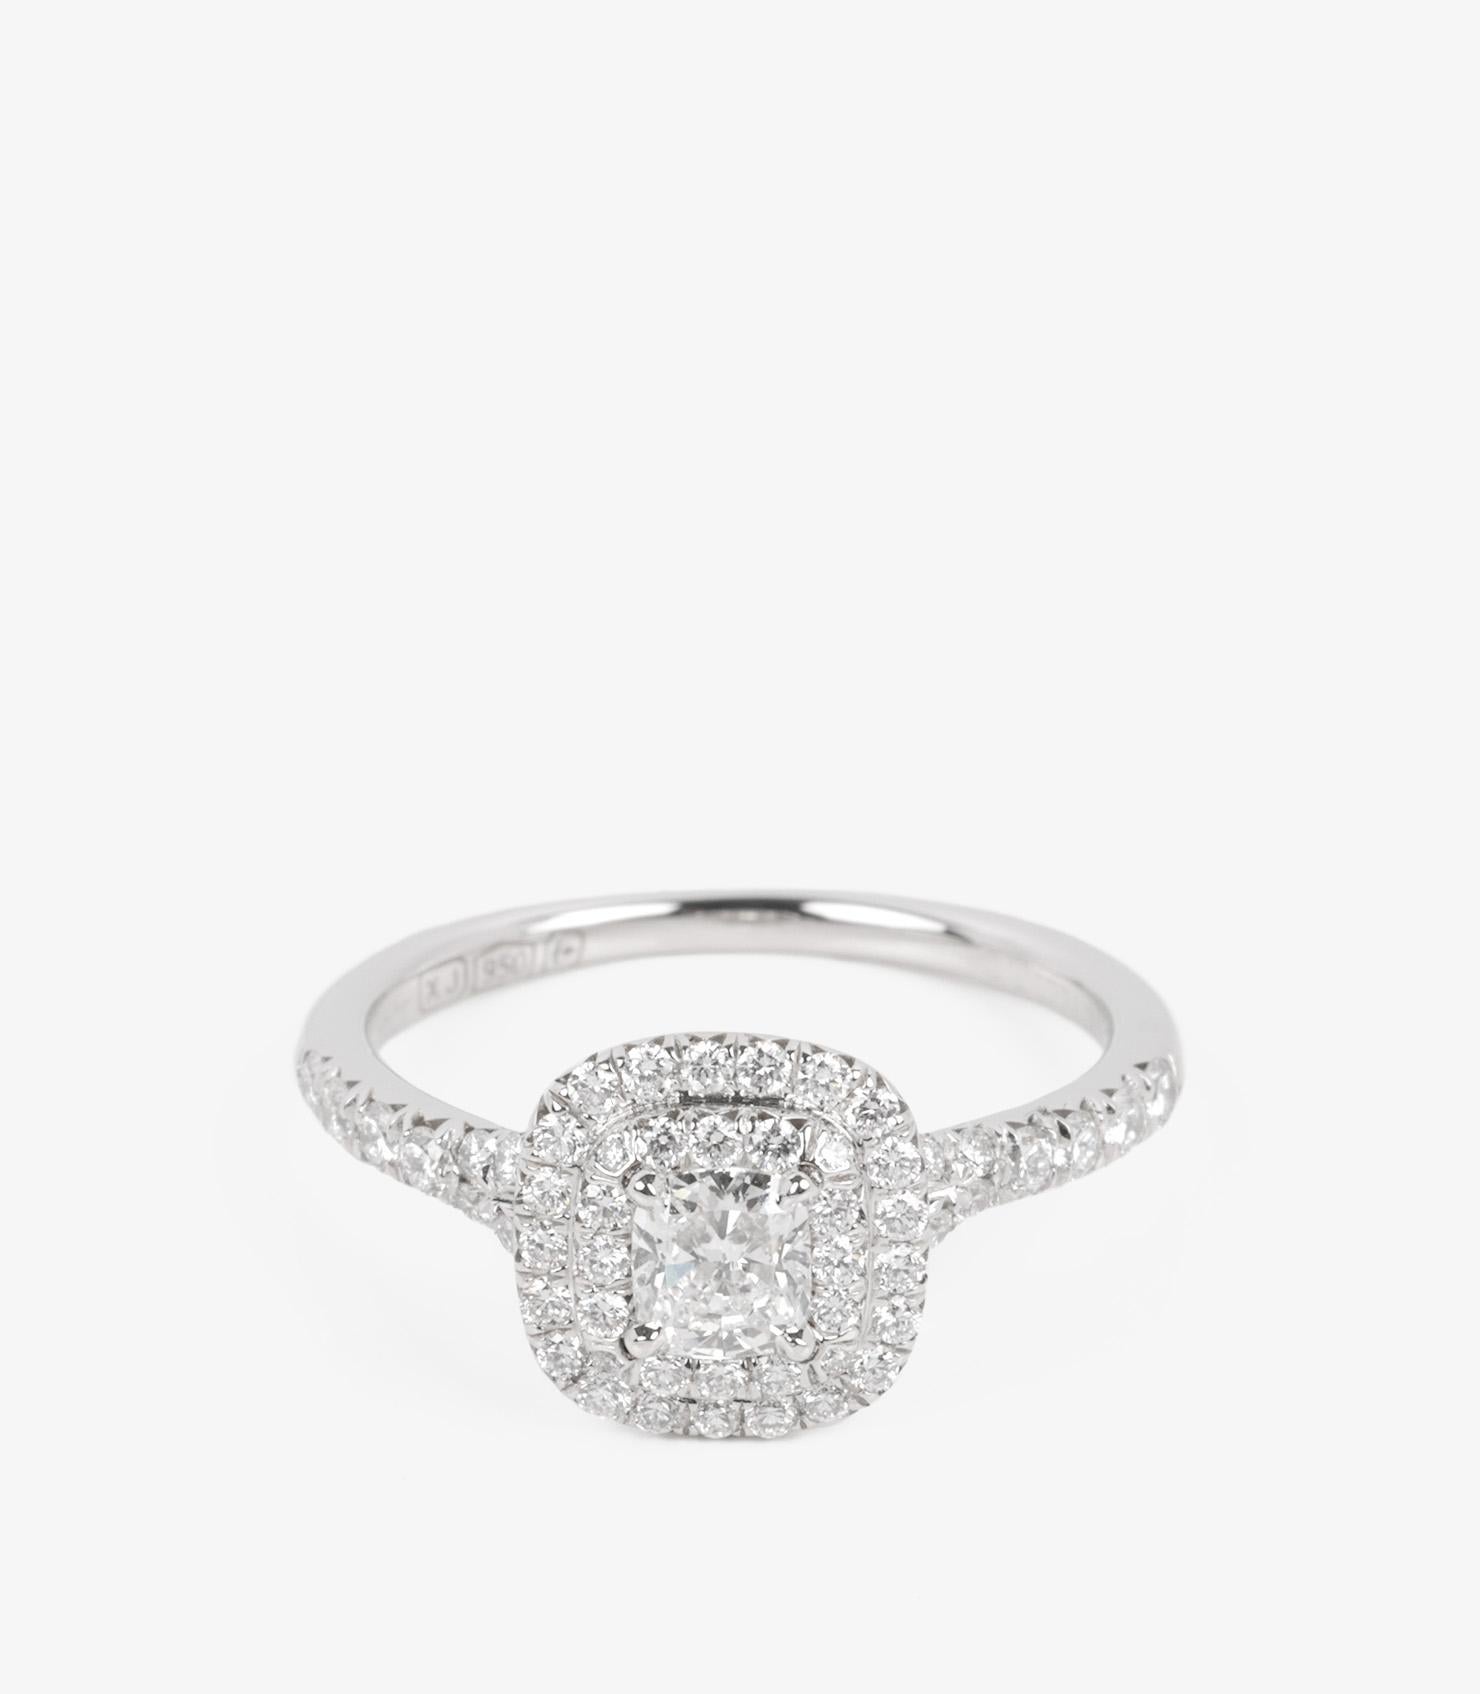 Tiffany & Co. Bague Soleste en platine avec diamant taille coussin de 0.27 carat

Marque : Tiffany & Co.
Modèle - Bague Soleste en diamant de 0.27ct
Type de produit- Bague
Numéro de série - 27******
Age- Circa 2011
Accompagné de : Tiffany & Co.